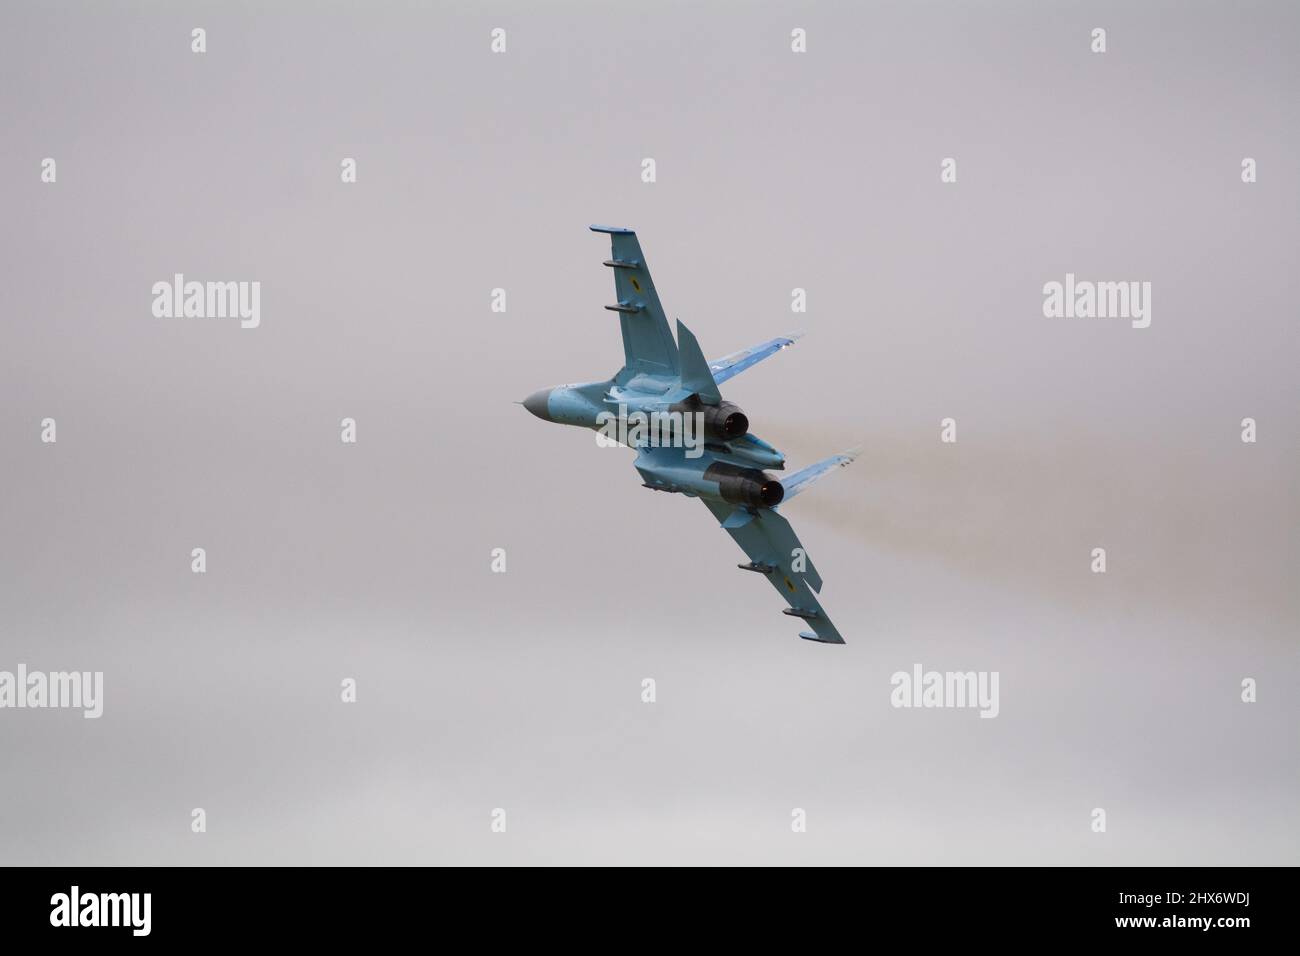 Ukrainian Air Force Sukhoi SU-27 avion de chasse bleu numérique à bord d'un avion volant à grande vitesse et affichant des manœuvres de combat au salon de l'aéronautique RIAT en 2017. Banque D'Images